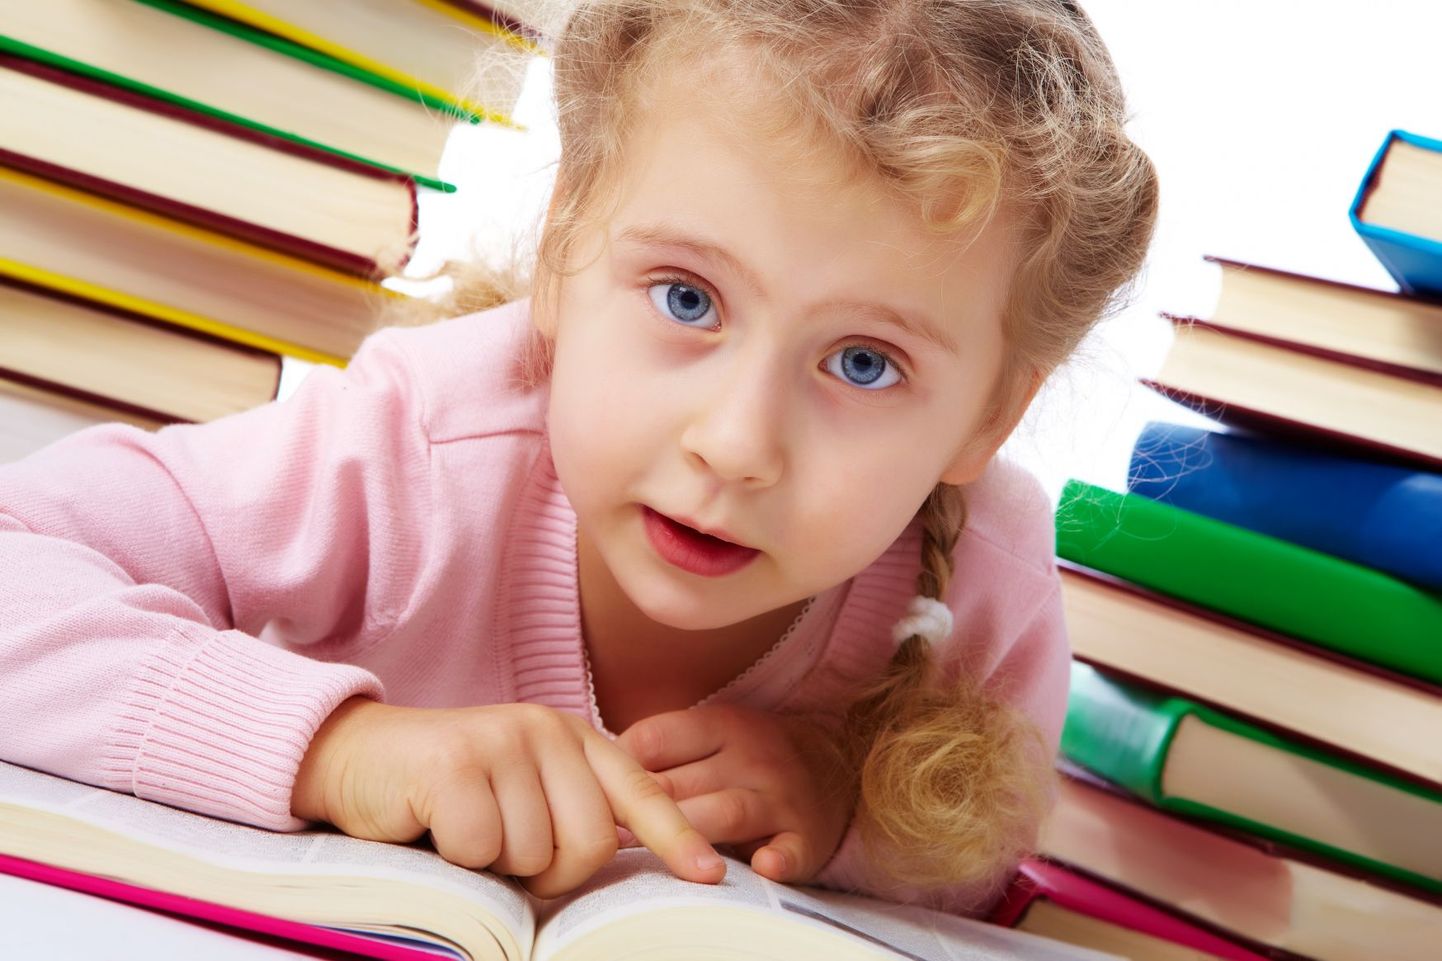 PISA testi ekspert leiab, et poistele ja tüdrukutele võiks lugemist eraldi õpetada.